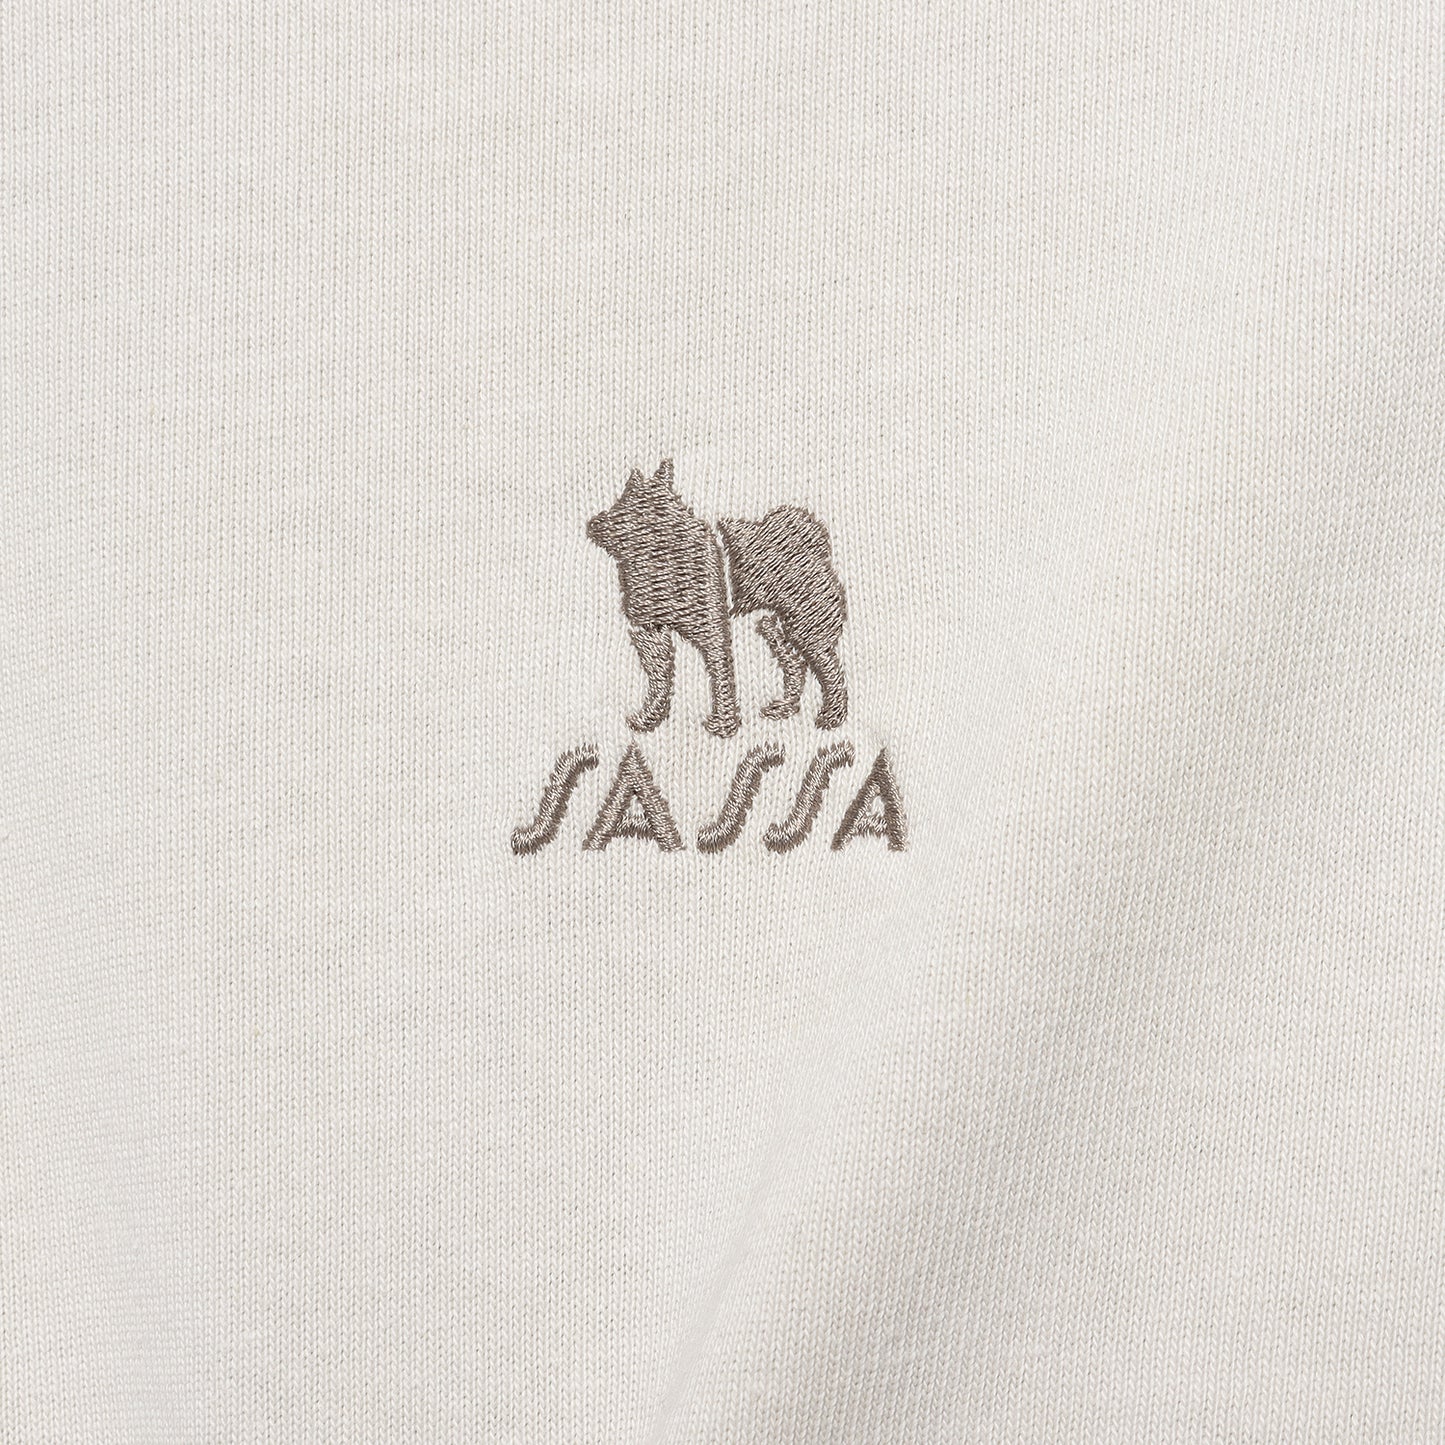 SHIBA/Shiba Inu one point embroidery T-shirt long sleeve